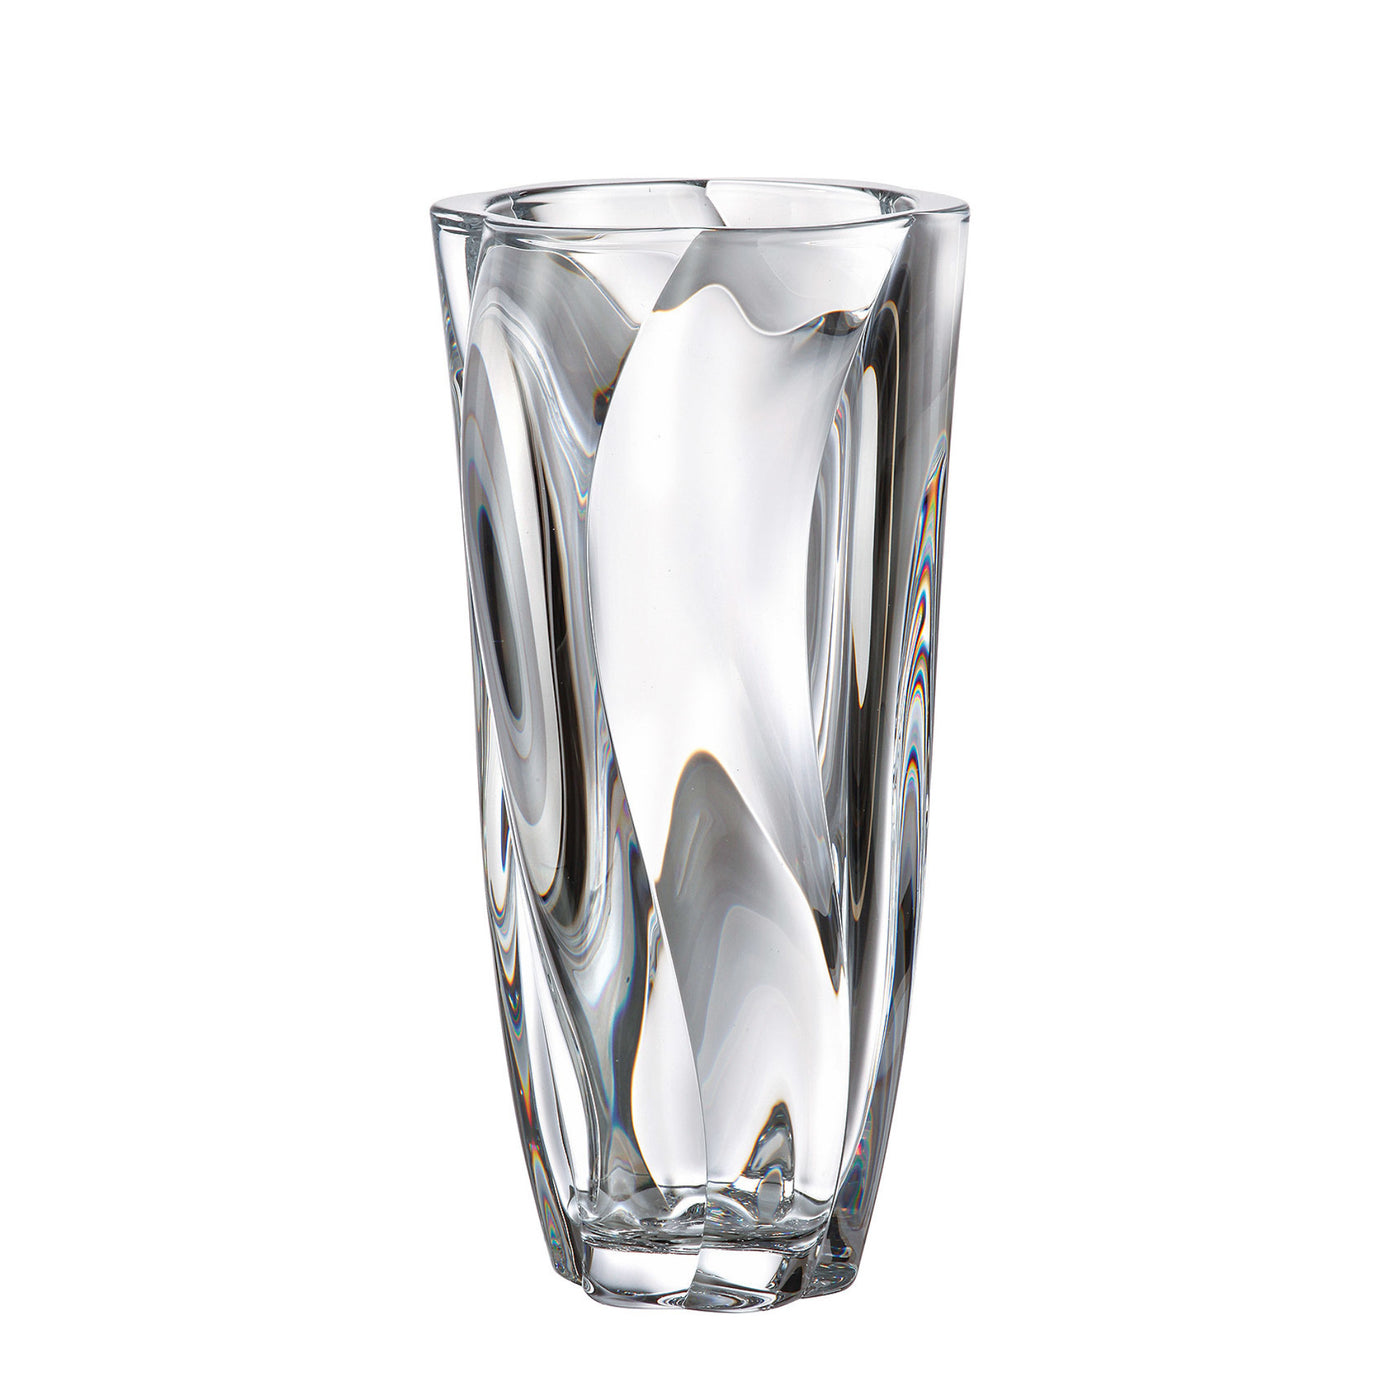 Vysoká skleněná váza Crystal Bohemia Barley Twist 30,5 cm